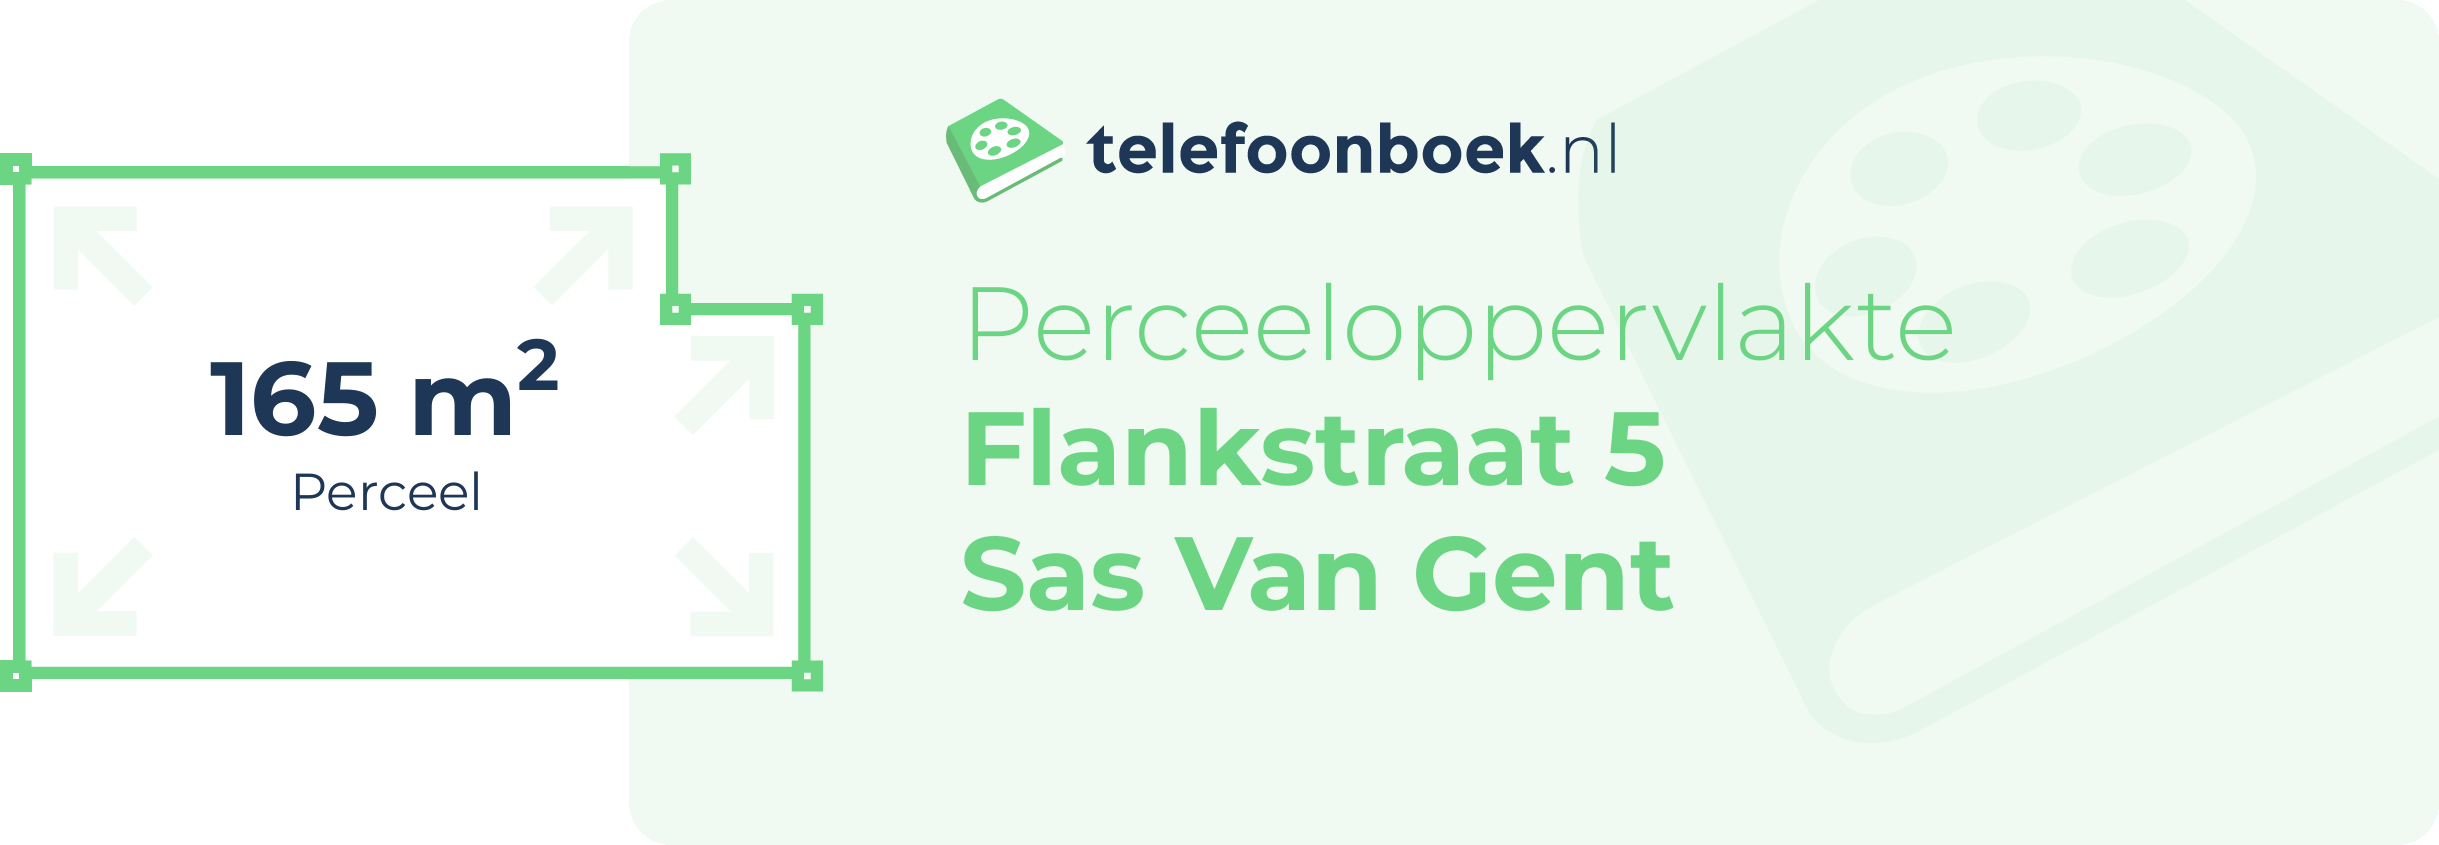 Perceeloppervlakte Flankstraat 5 Sas Van Gent